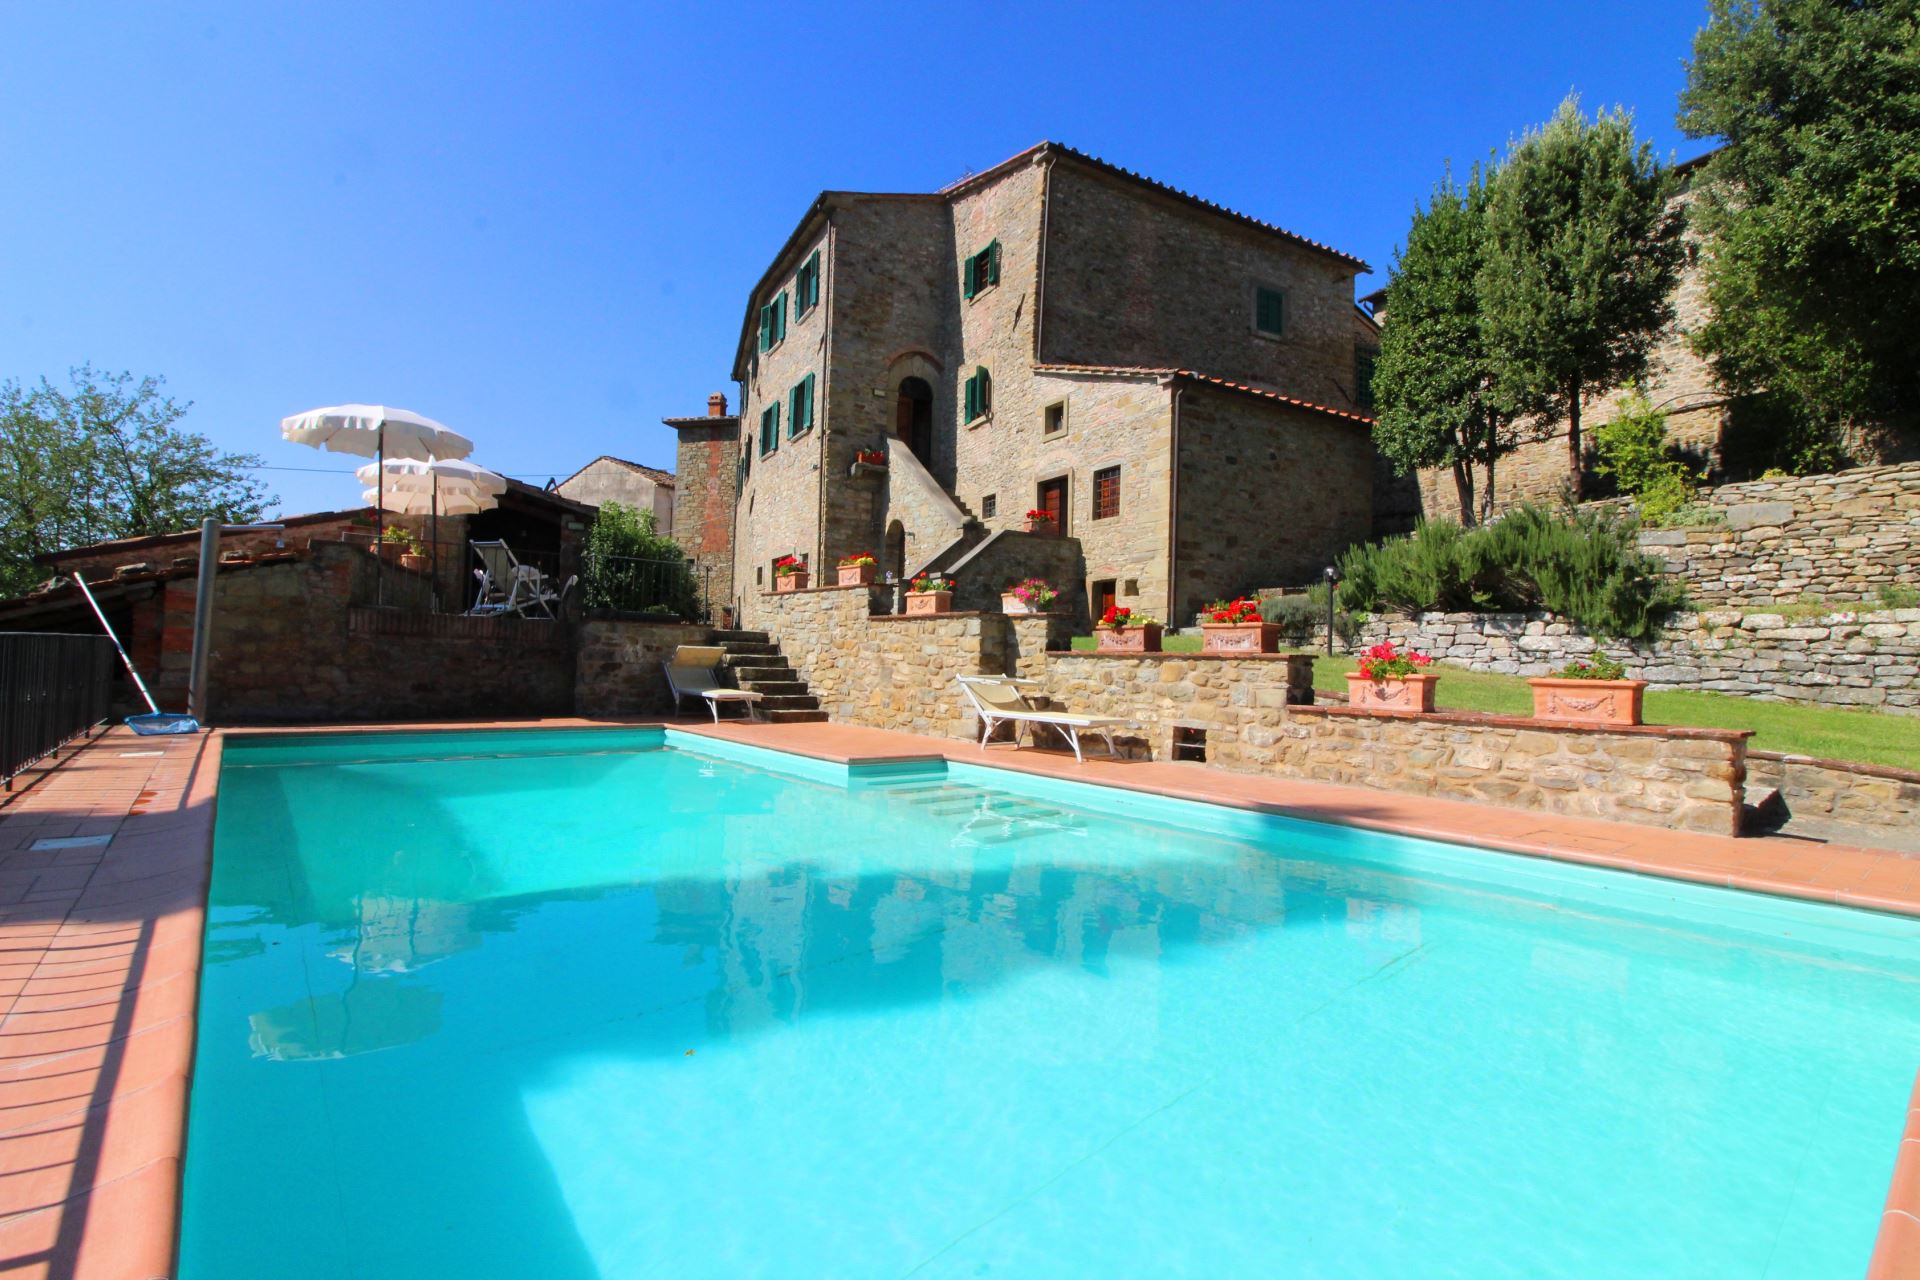 434_b596ec5_Kindvriendelijk vakantiehuis met privé zwembad, Borgo Caprile, Toscane, Cortona, Arezzo, (43).